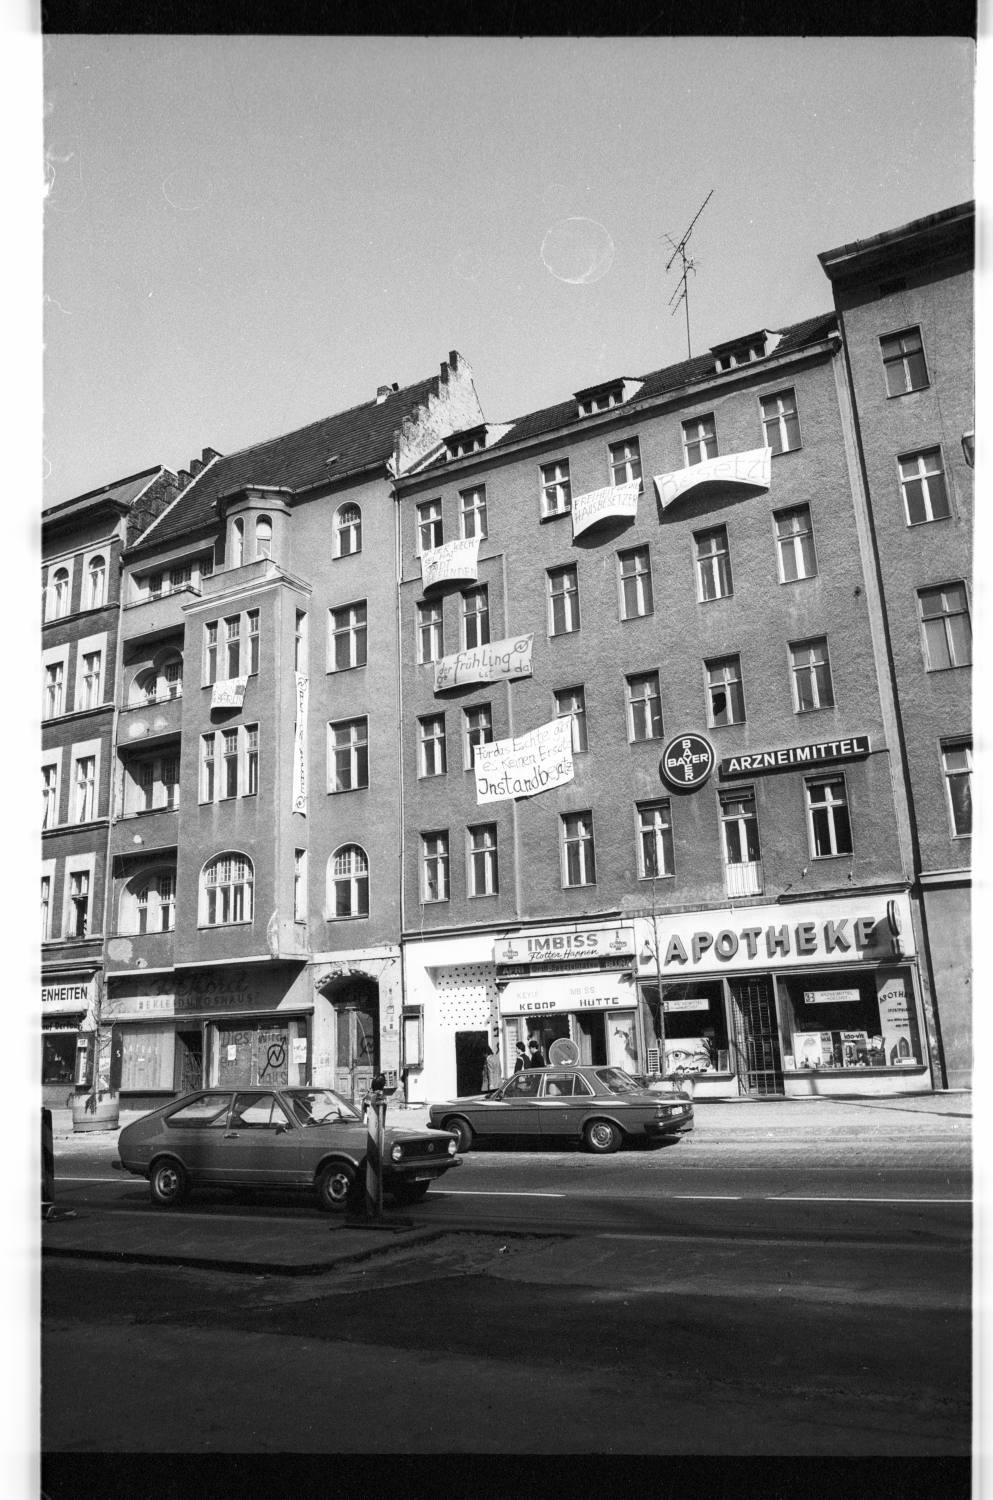 Kleinbildnegative: Besetztes Haus, Potsdamer Str. 157, 1981 (Museen Tempelhof-Schöneberg/Jürgen Henschel RR-F)